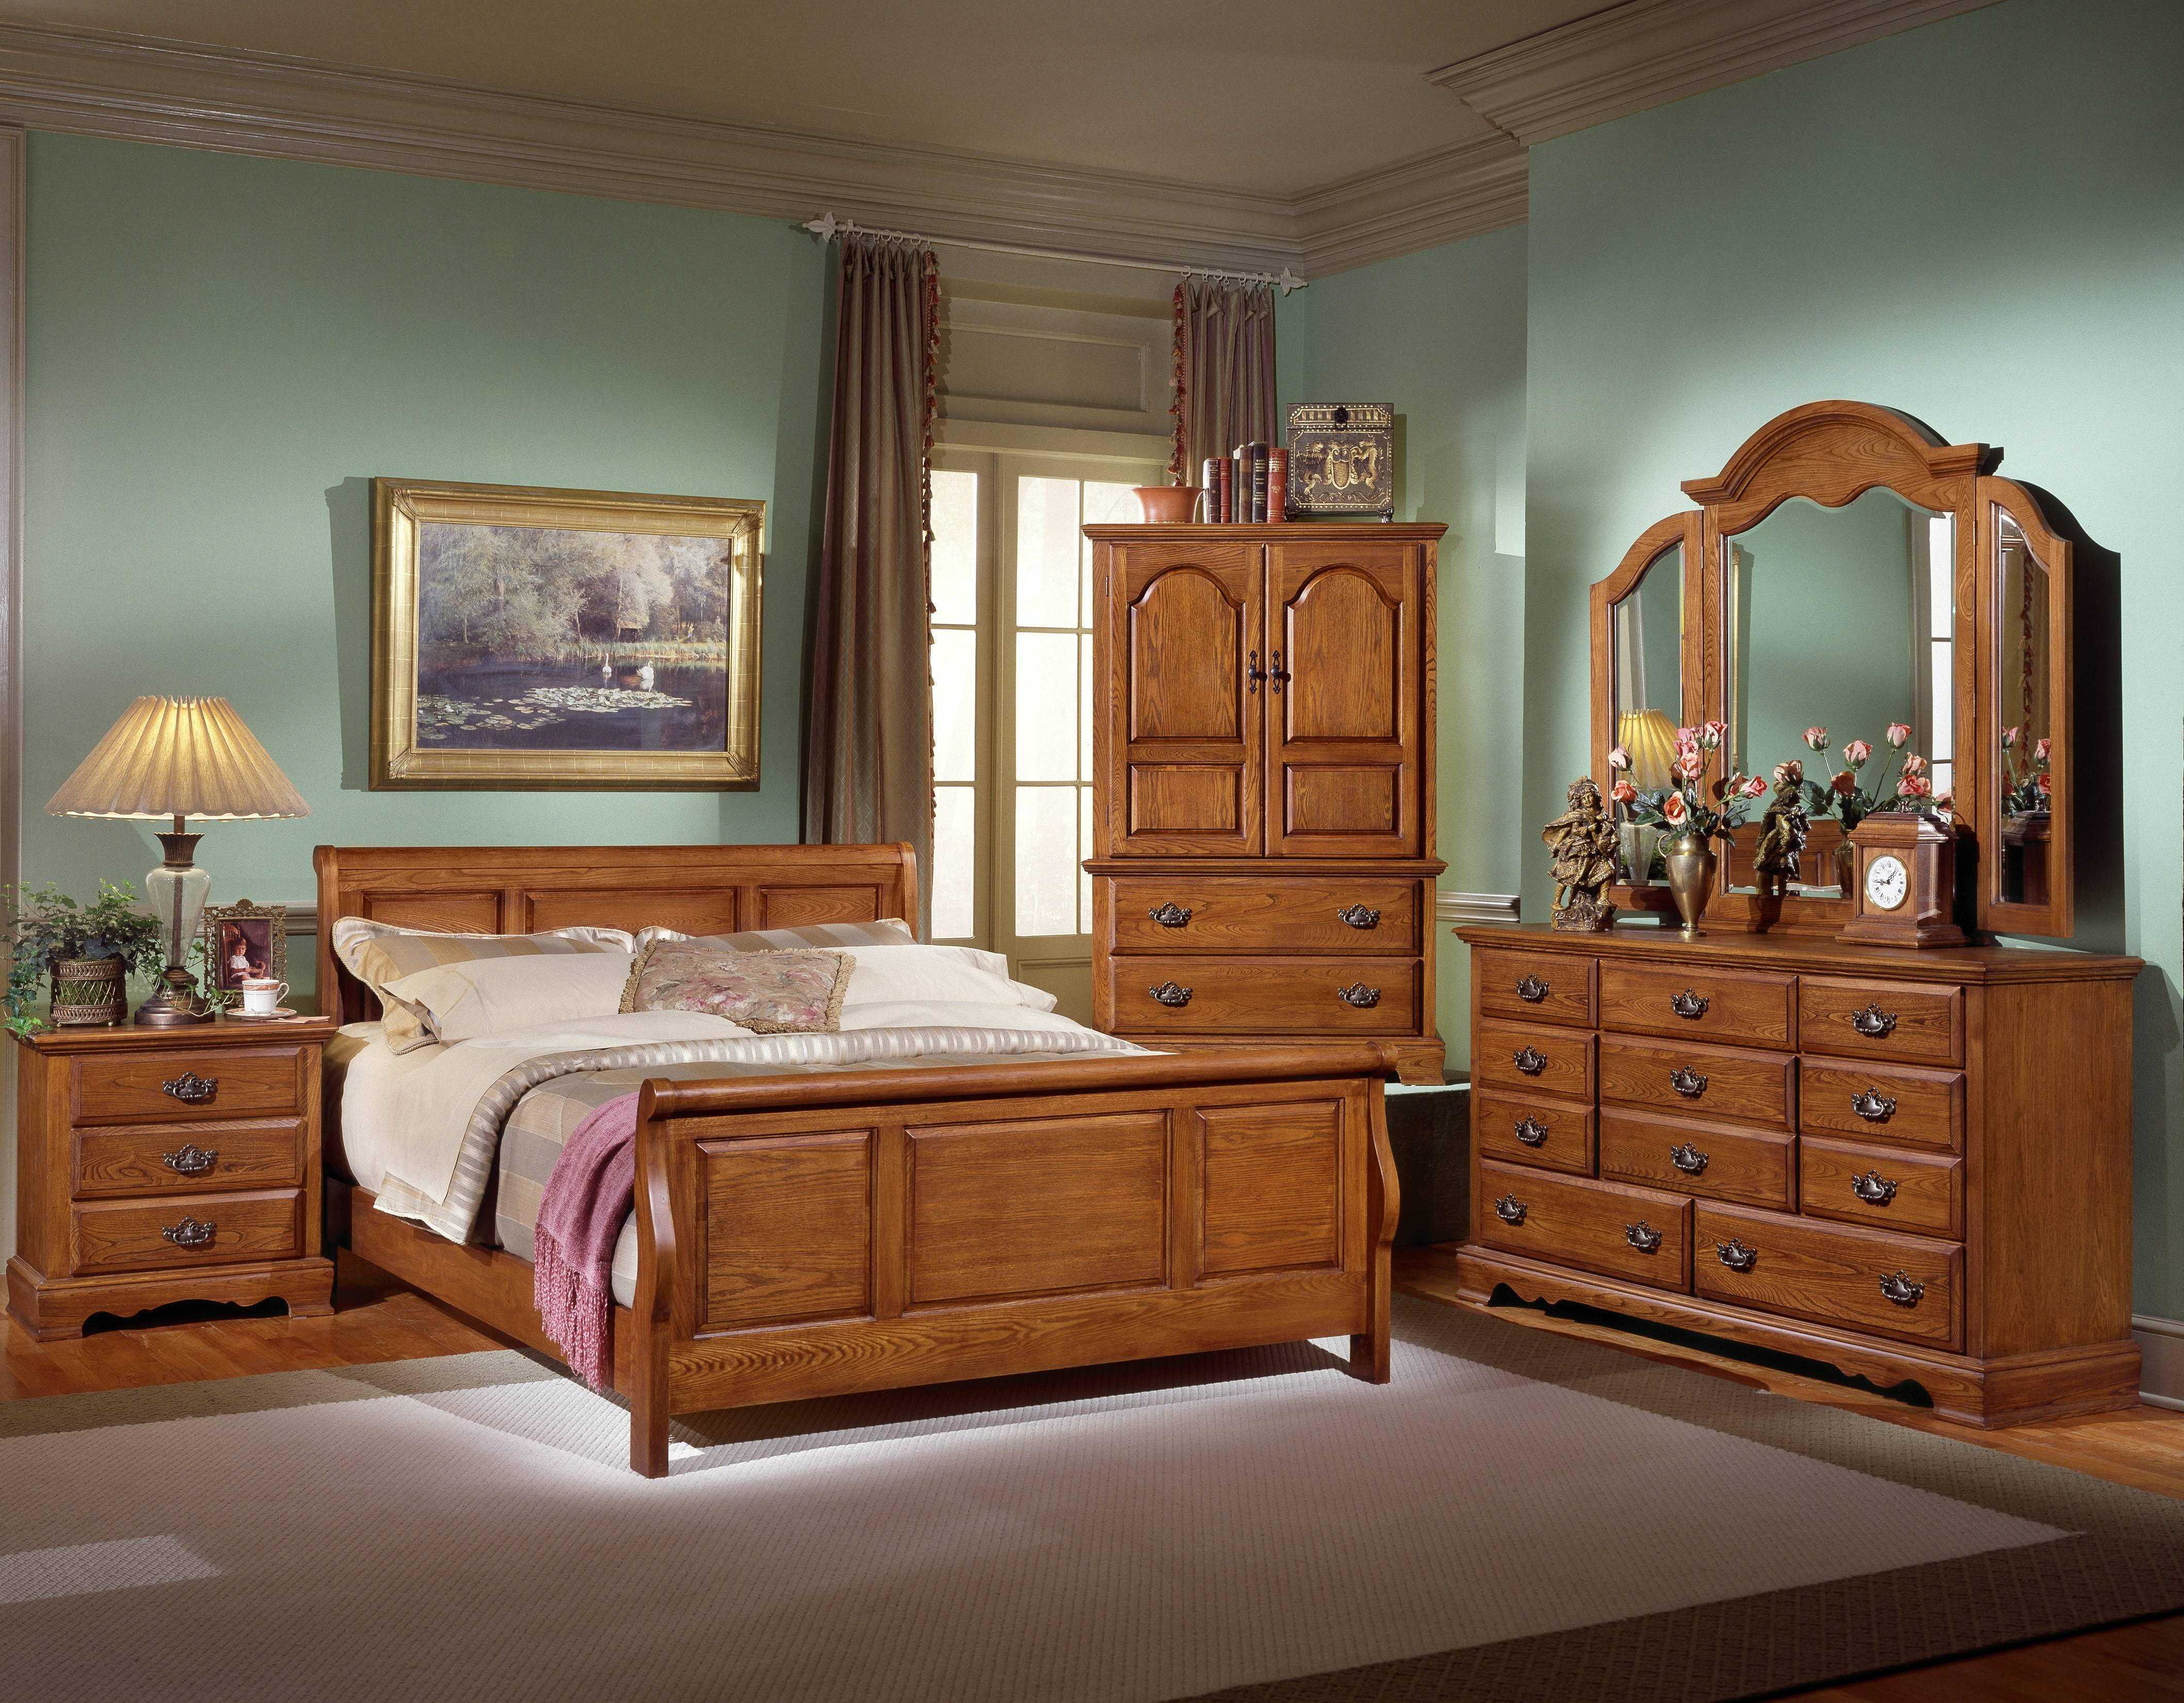 Wooden мебель. Спальня из массива гевеи 4934. Румынская мебель Легаси ирландский стиль Кантри. Красивая деревянная мебель. Спальня из дерева.